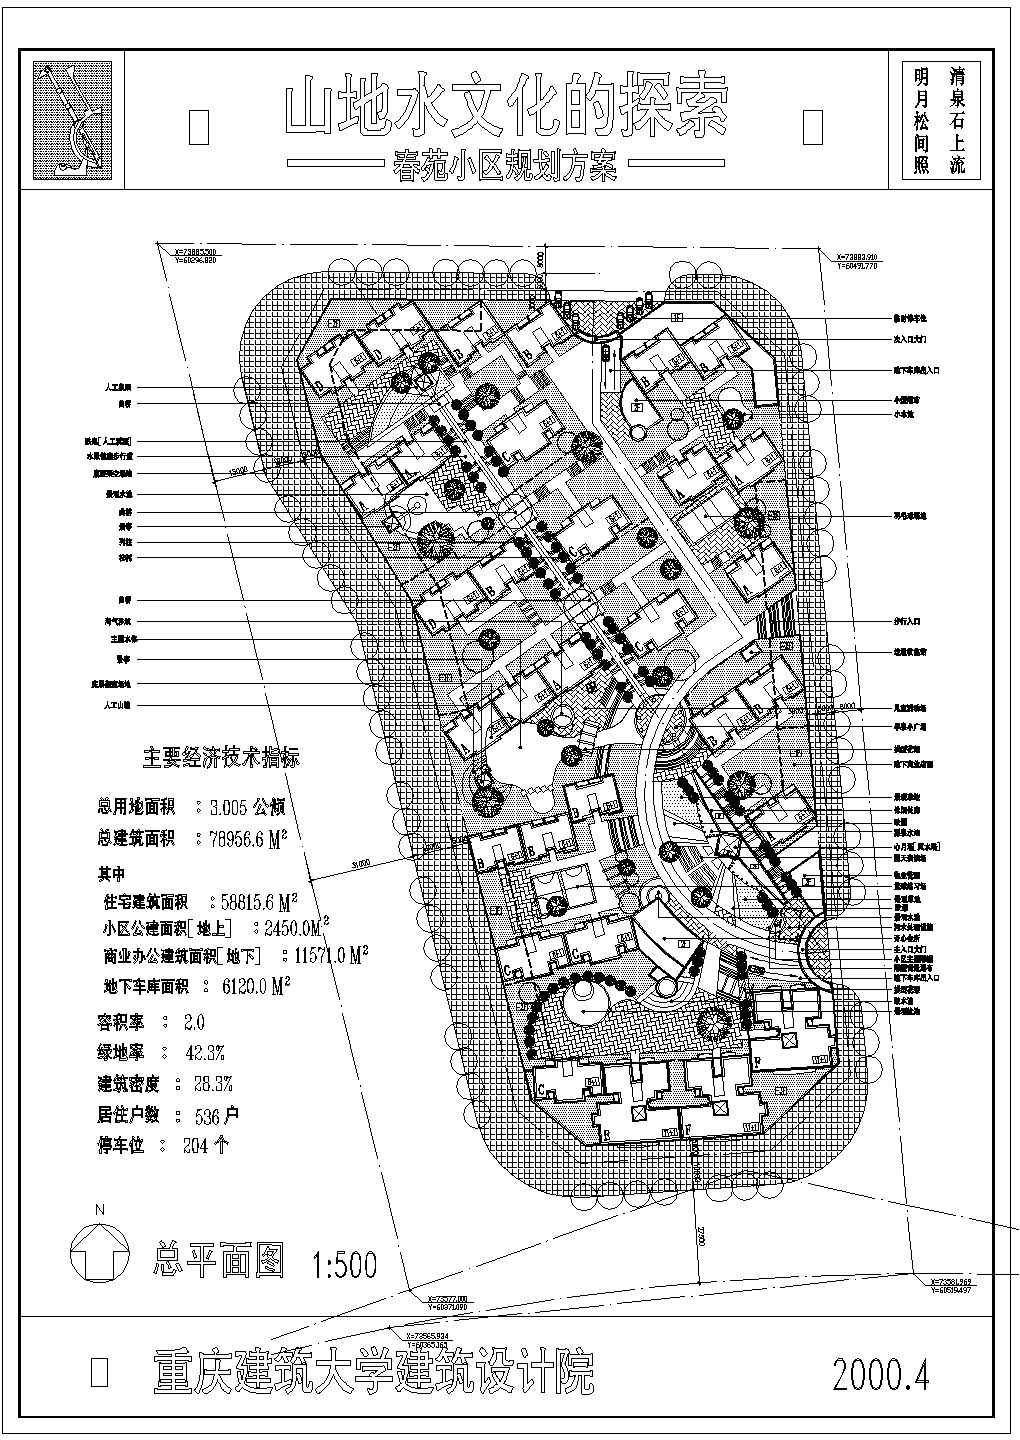 3.005公顷小区规划设计图纸